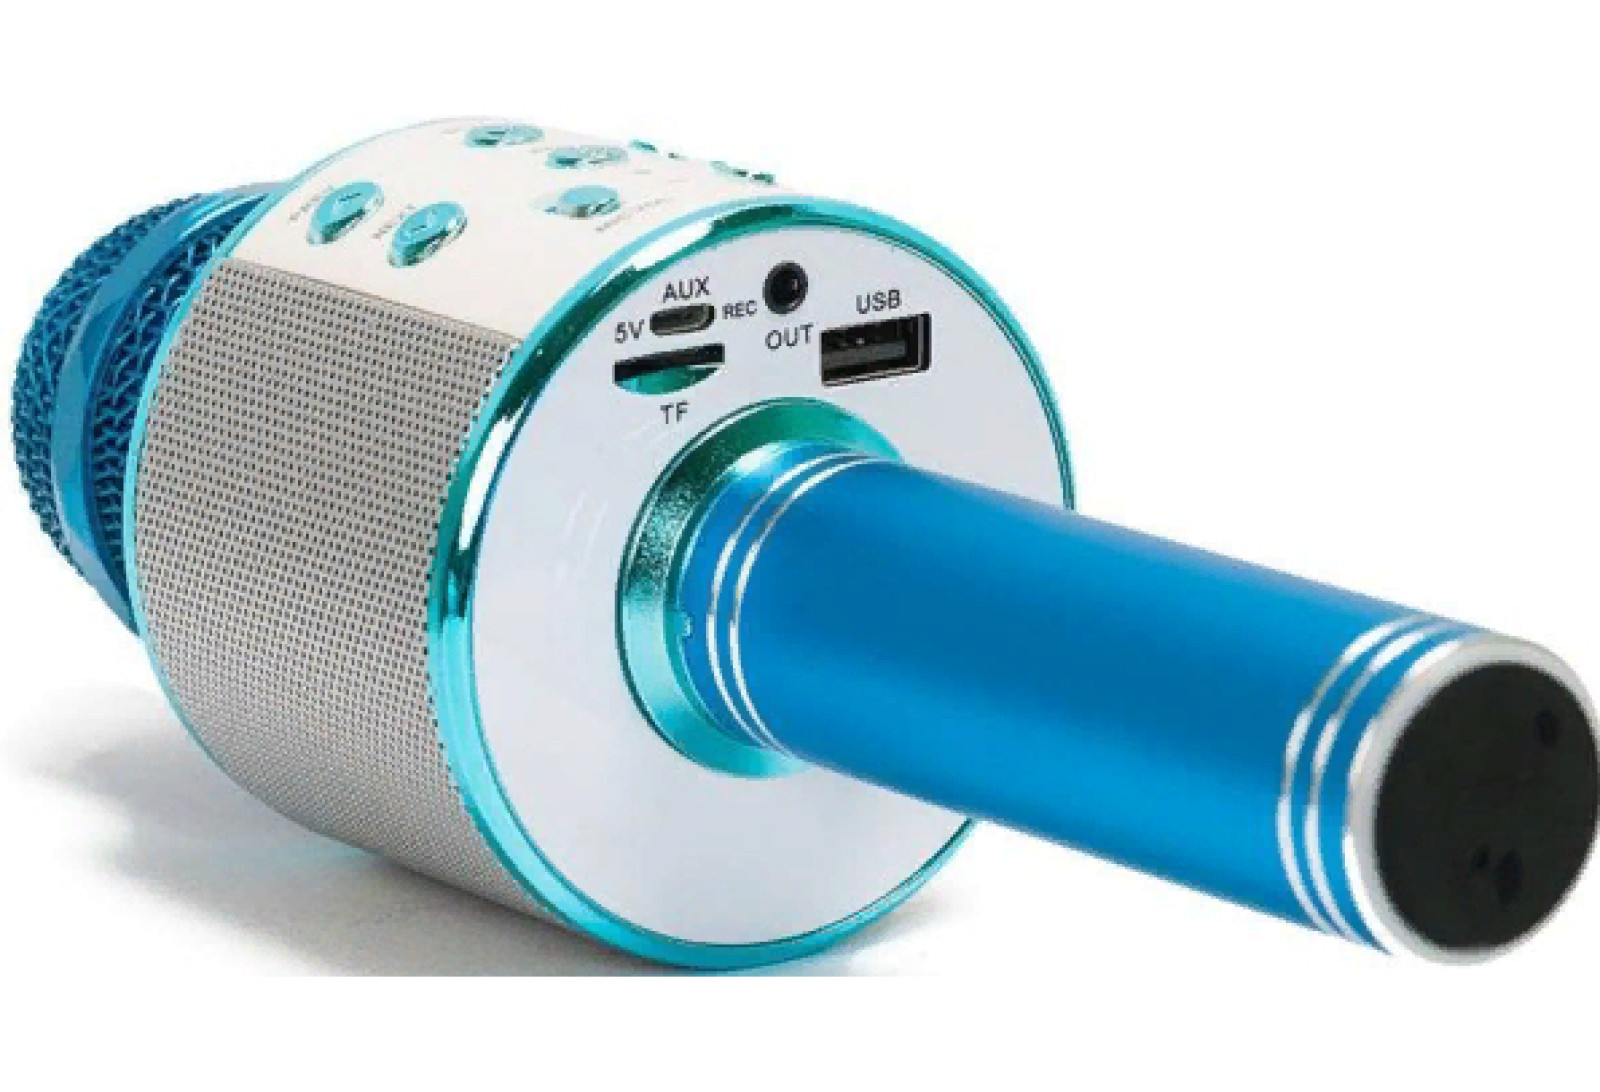 Микрофон караоке Bluetooth WS-858 Голубой 183272